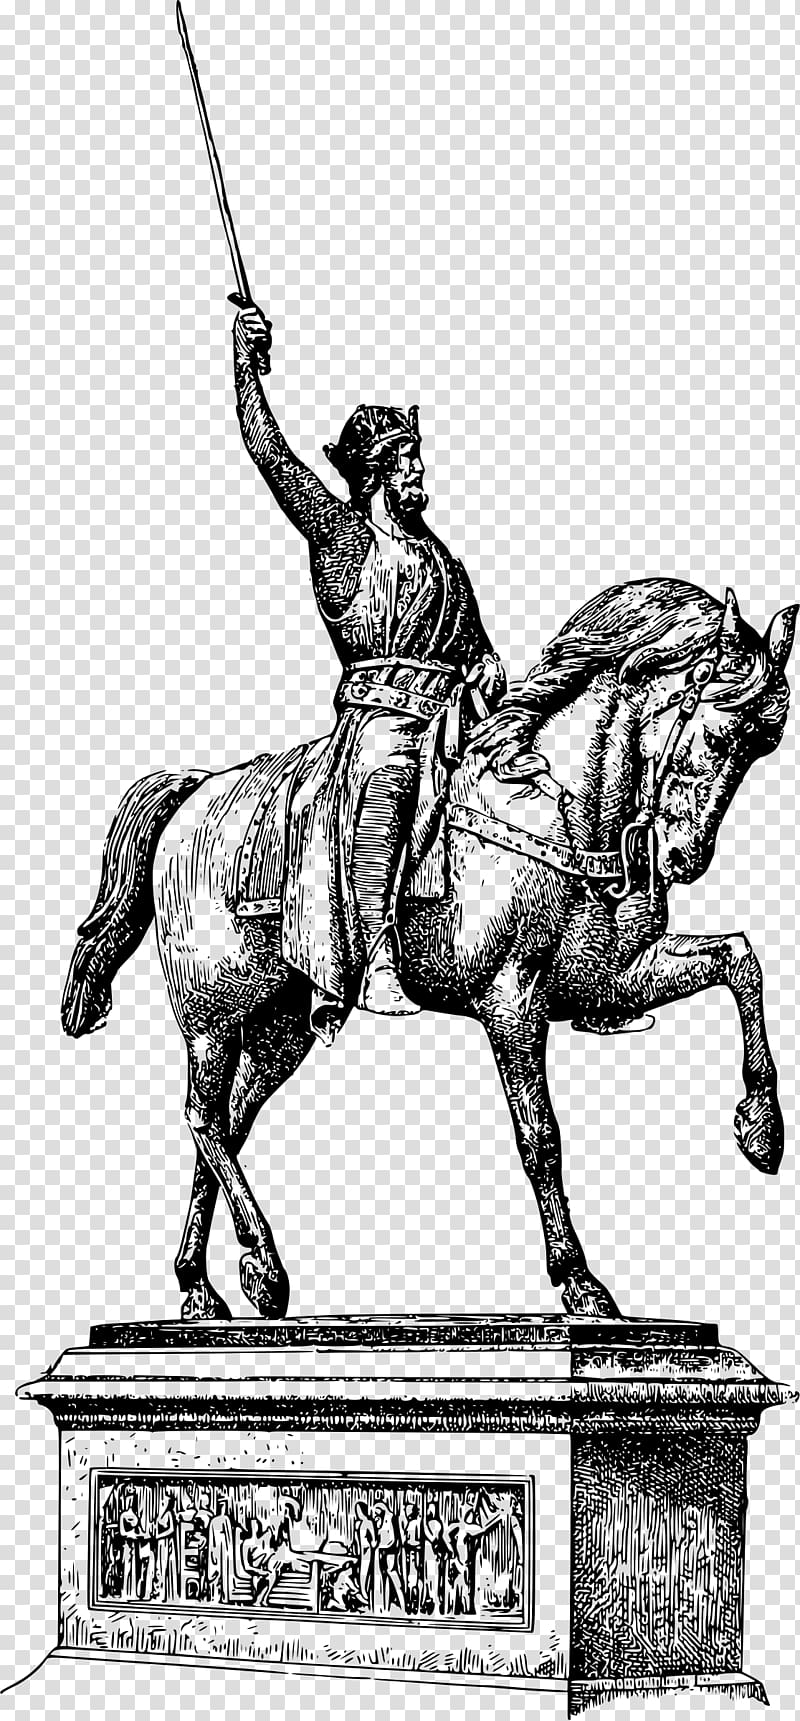 Middle Ages Richard Coeur de Lion Battle of Arsuf, statue transparent background PNG clipart